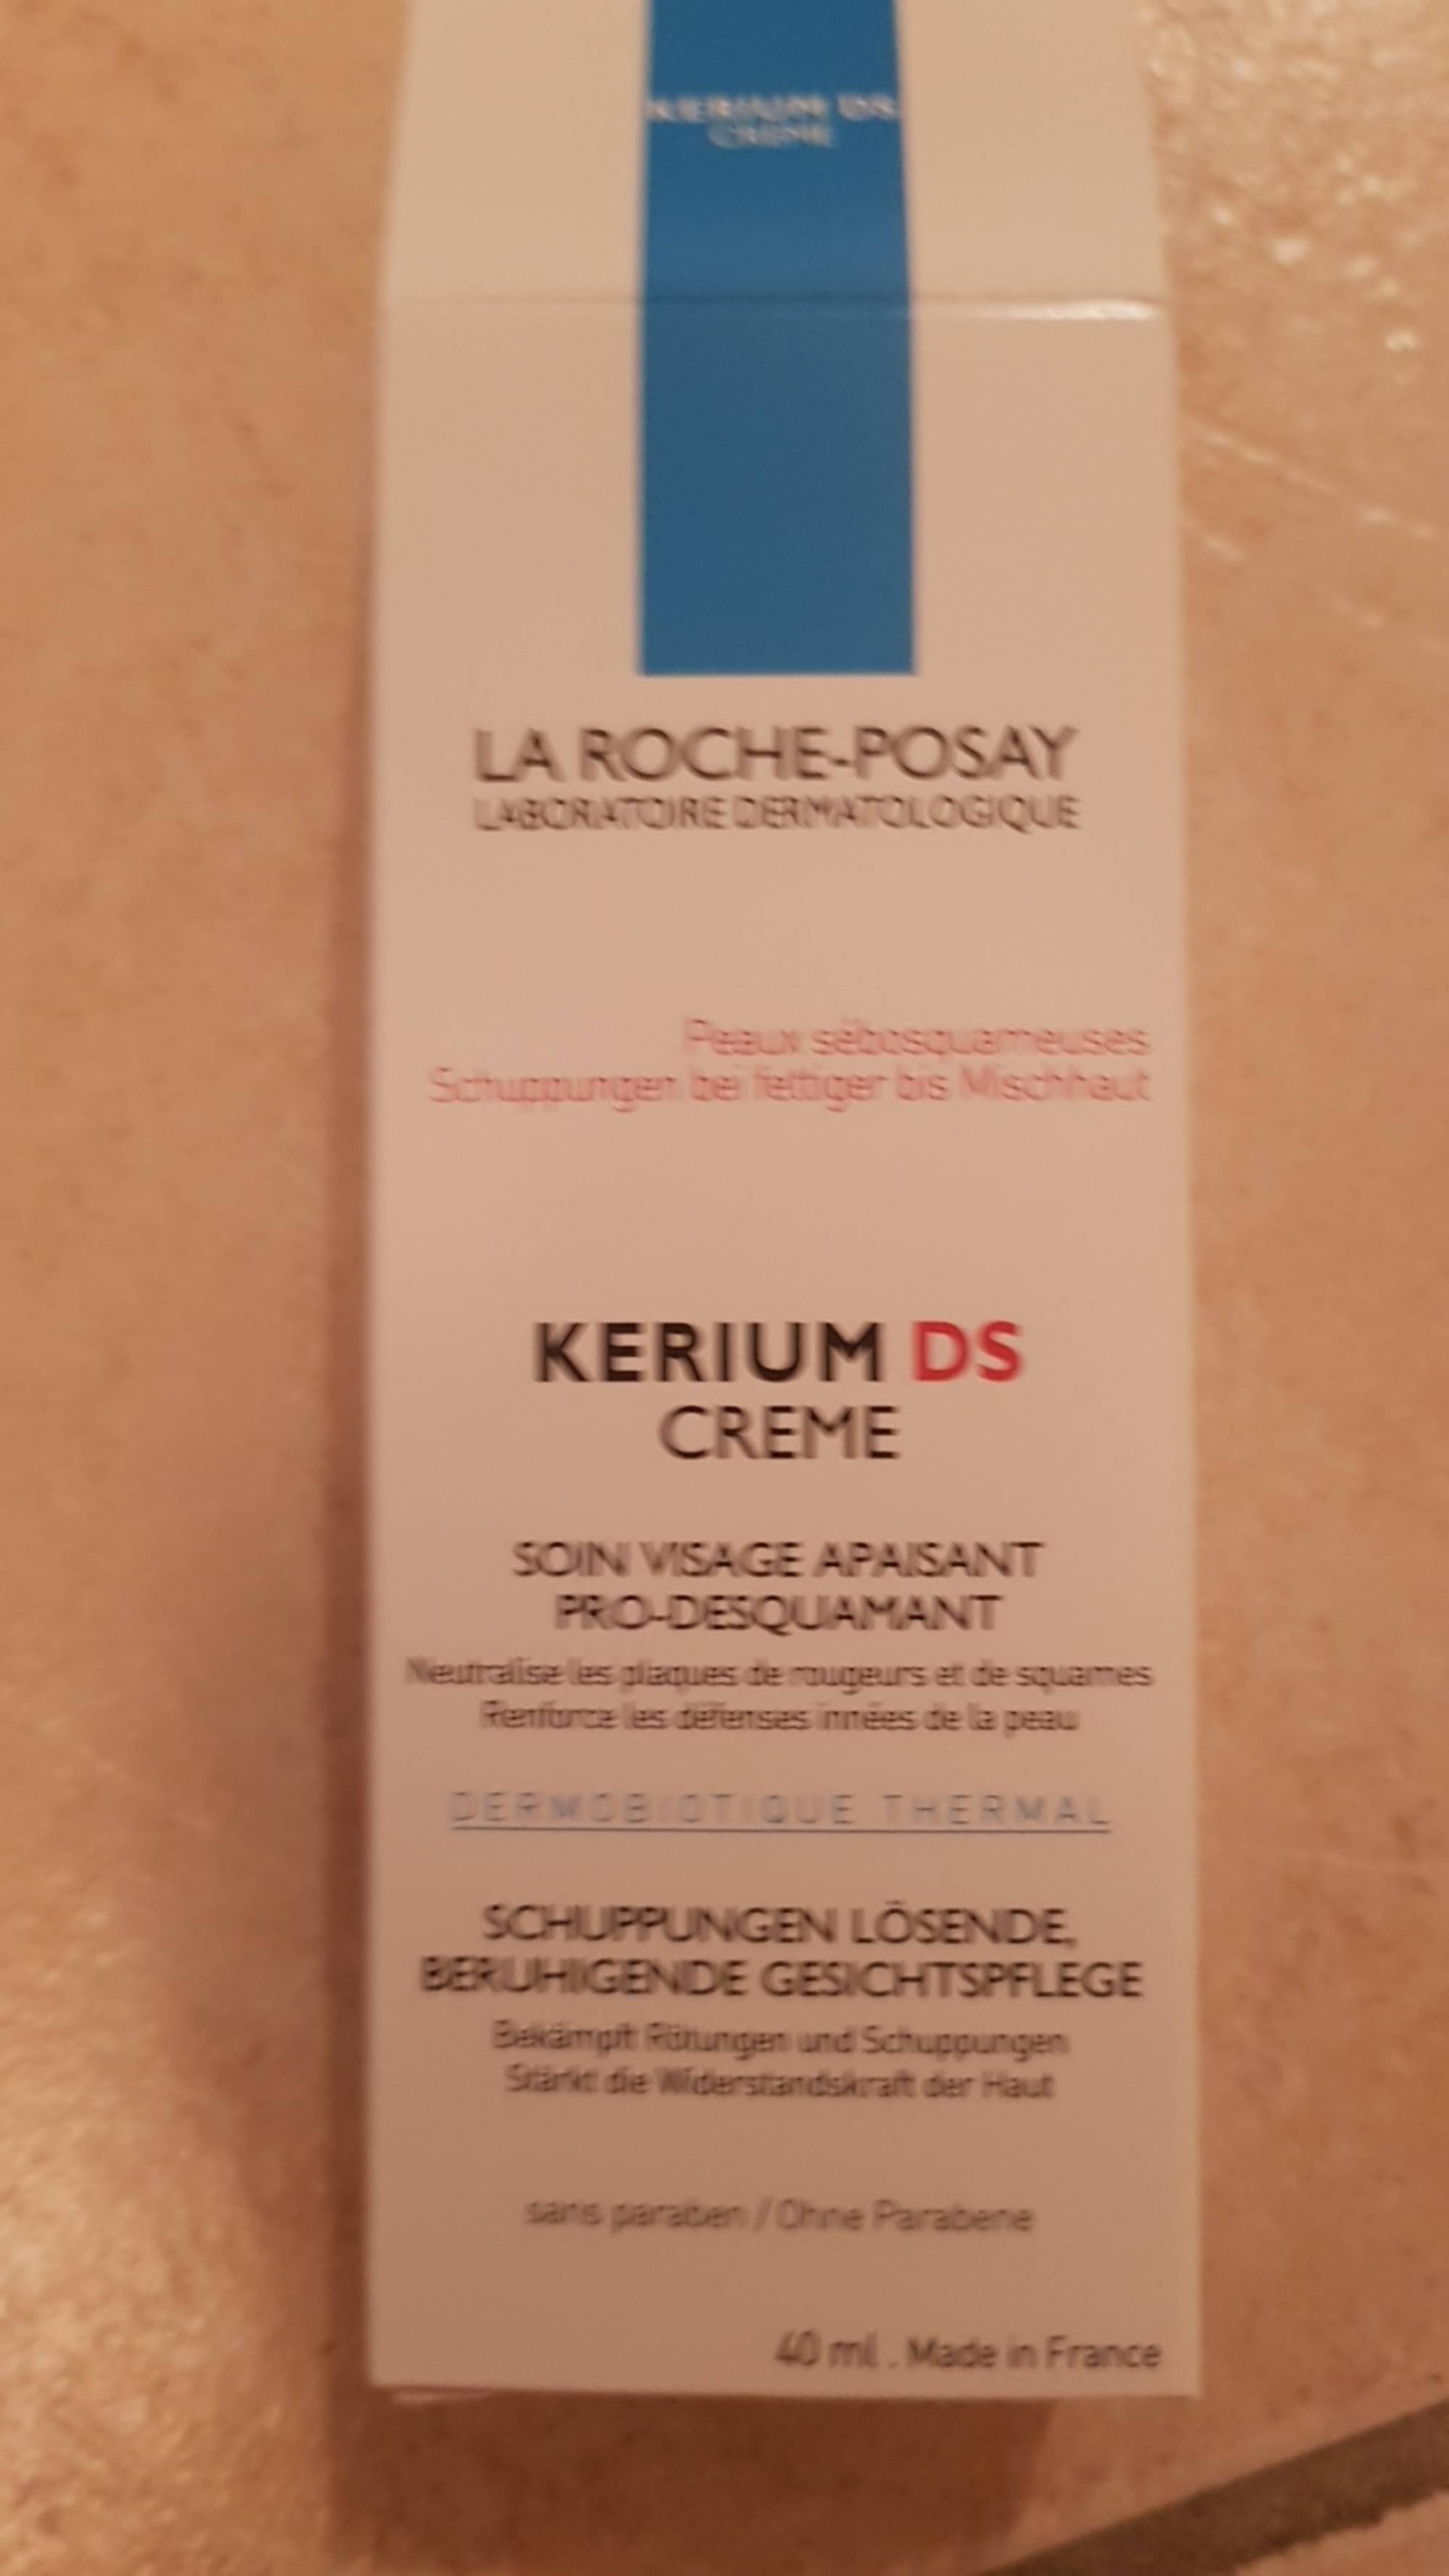 LA ROCHE-POSAY - Kerium DS crème - Soin visage apaisant pro-desquamant